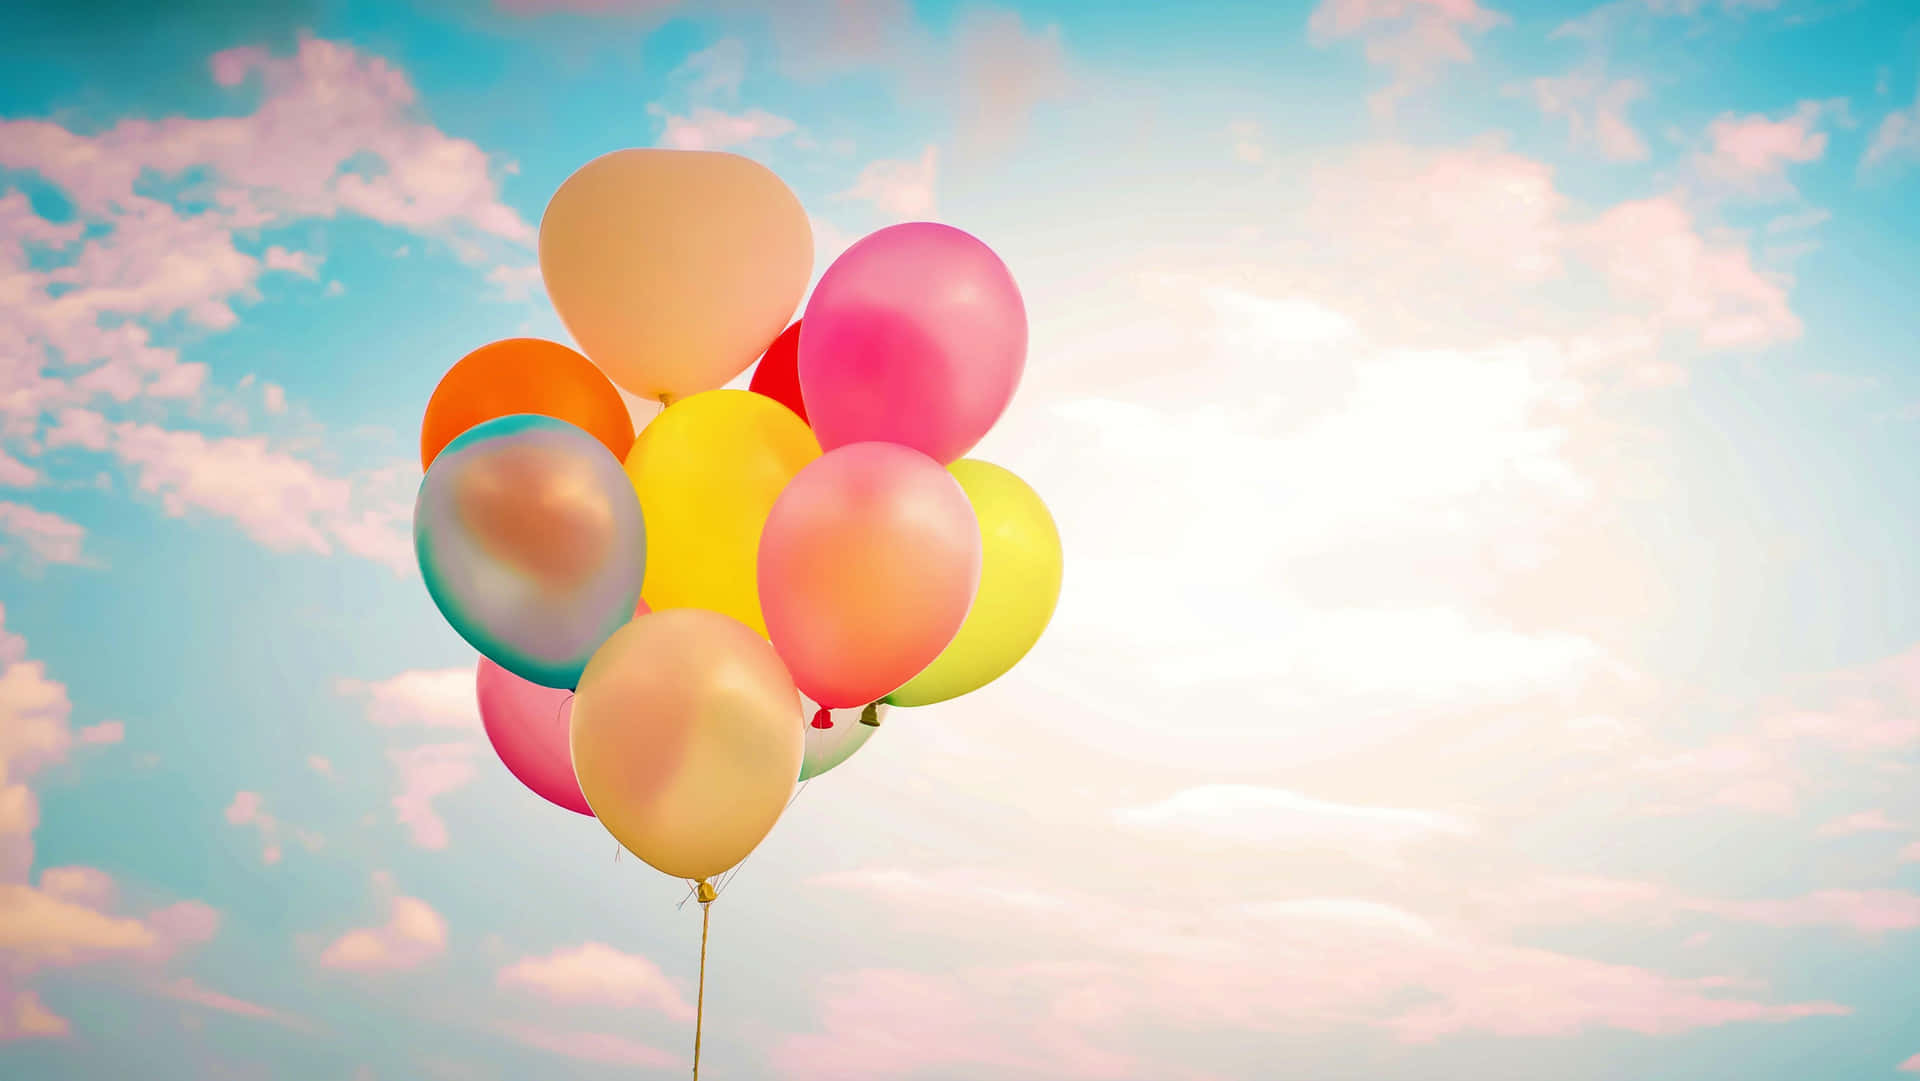 Farverigeballoner Skaber Et Smukt Syn På Himlen.